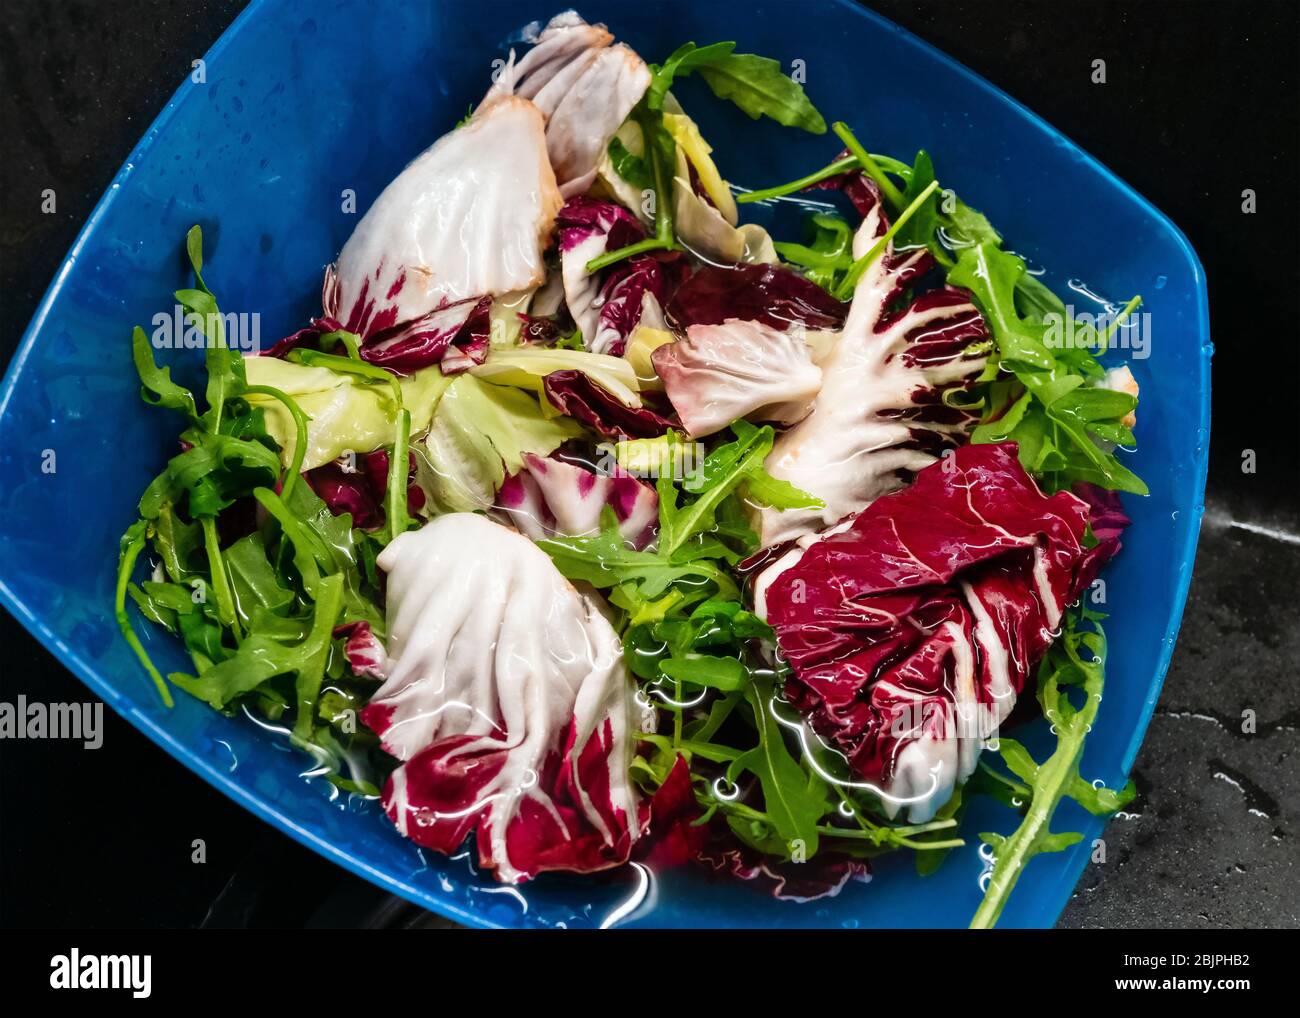 Lavare con acqua la rucola e l'insalata di lattuga nel piatto di plastica blu da vicino. Foto Stock